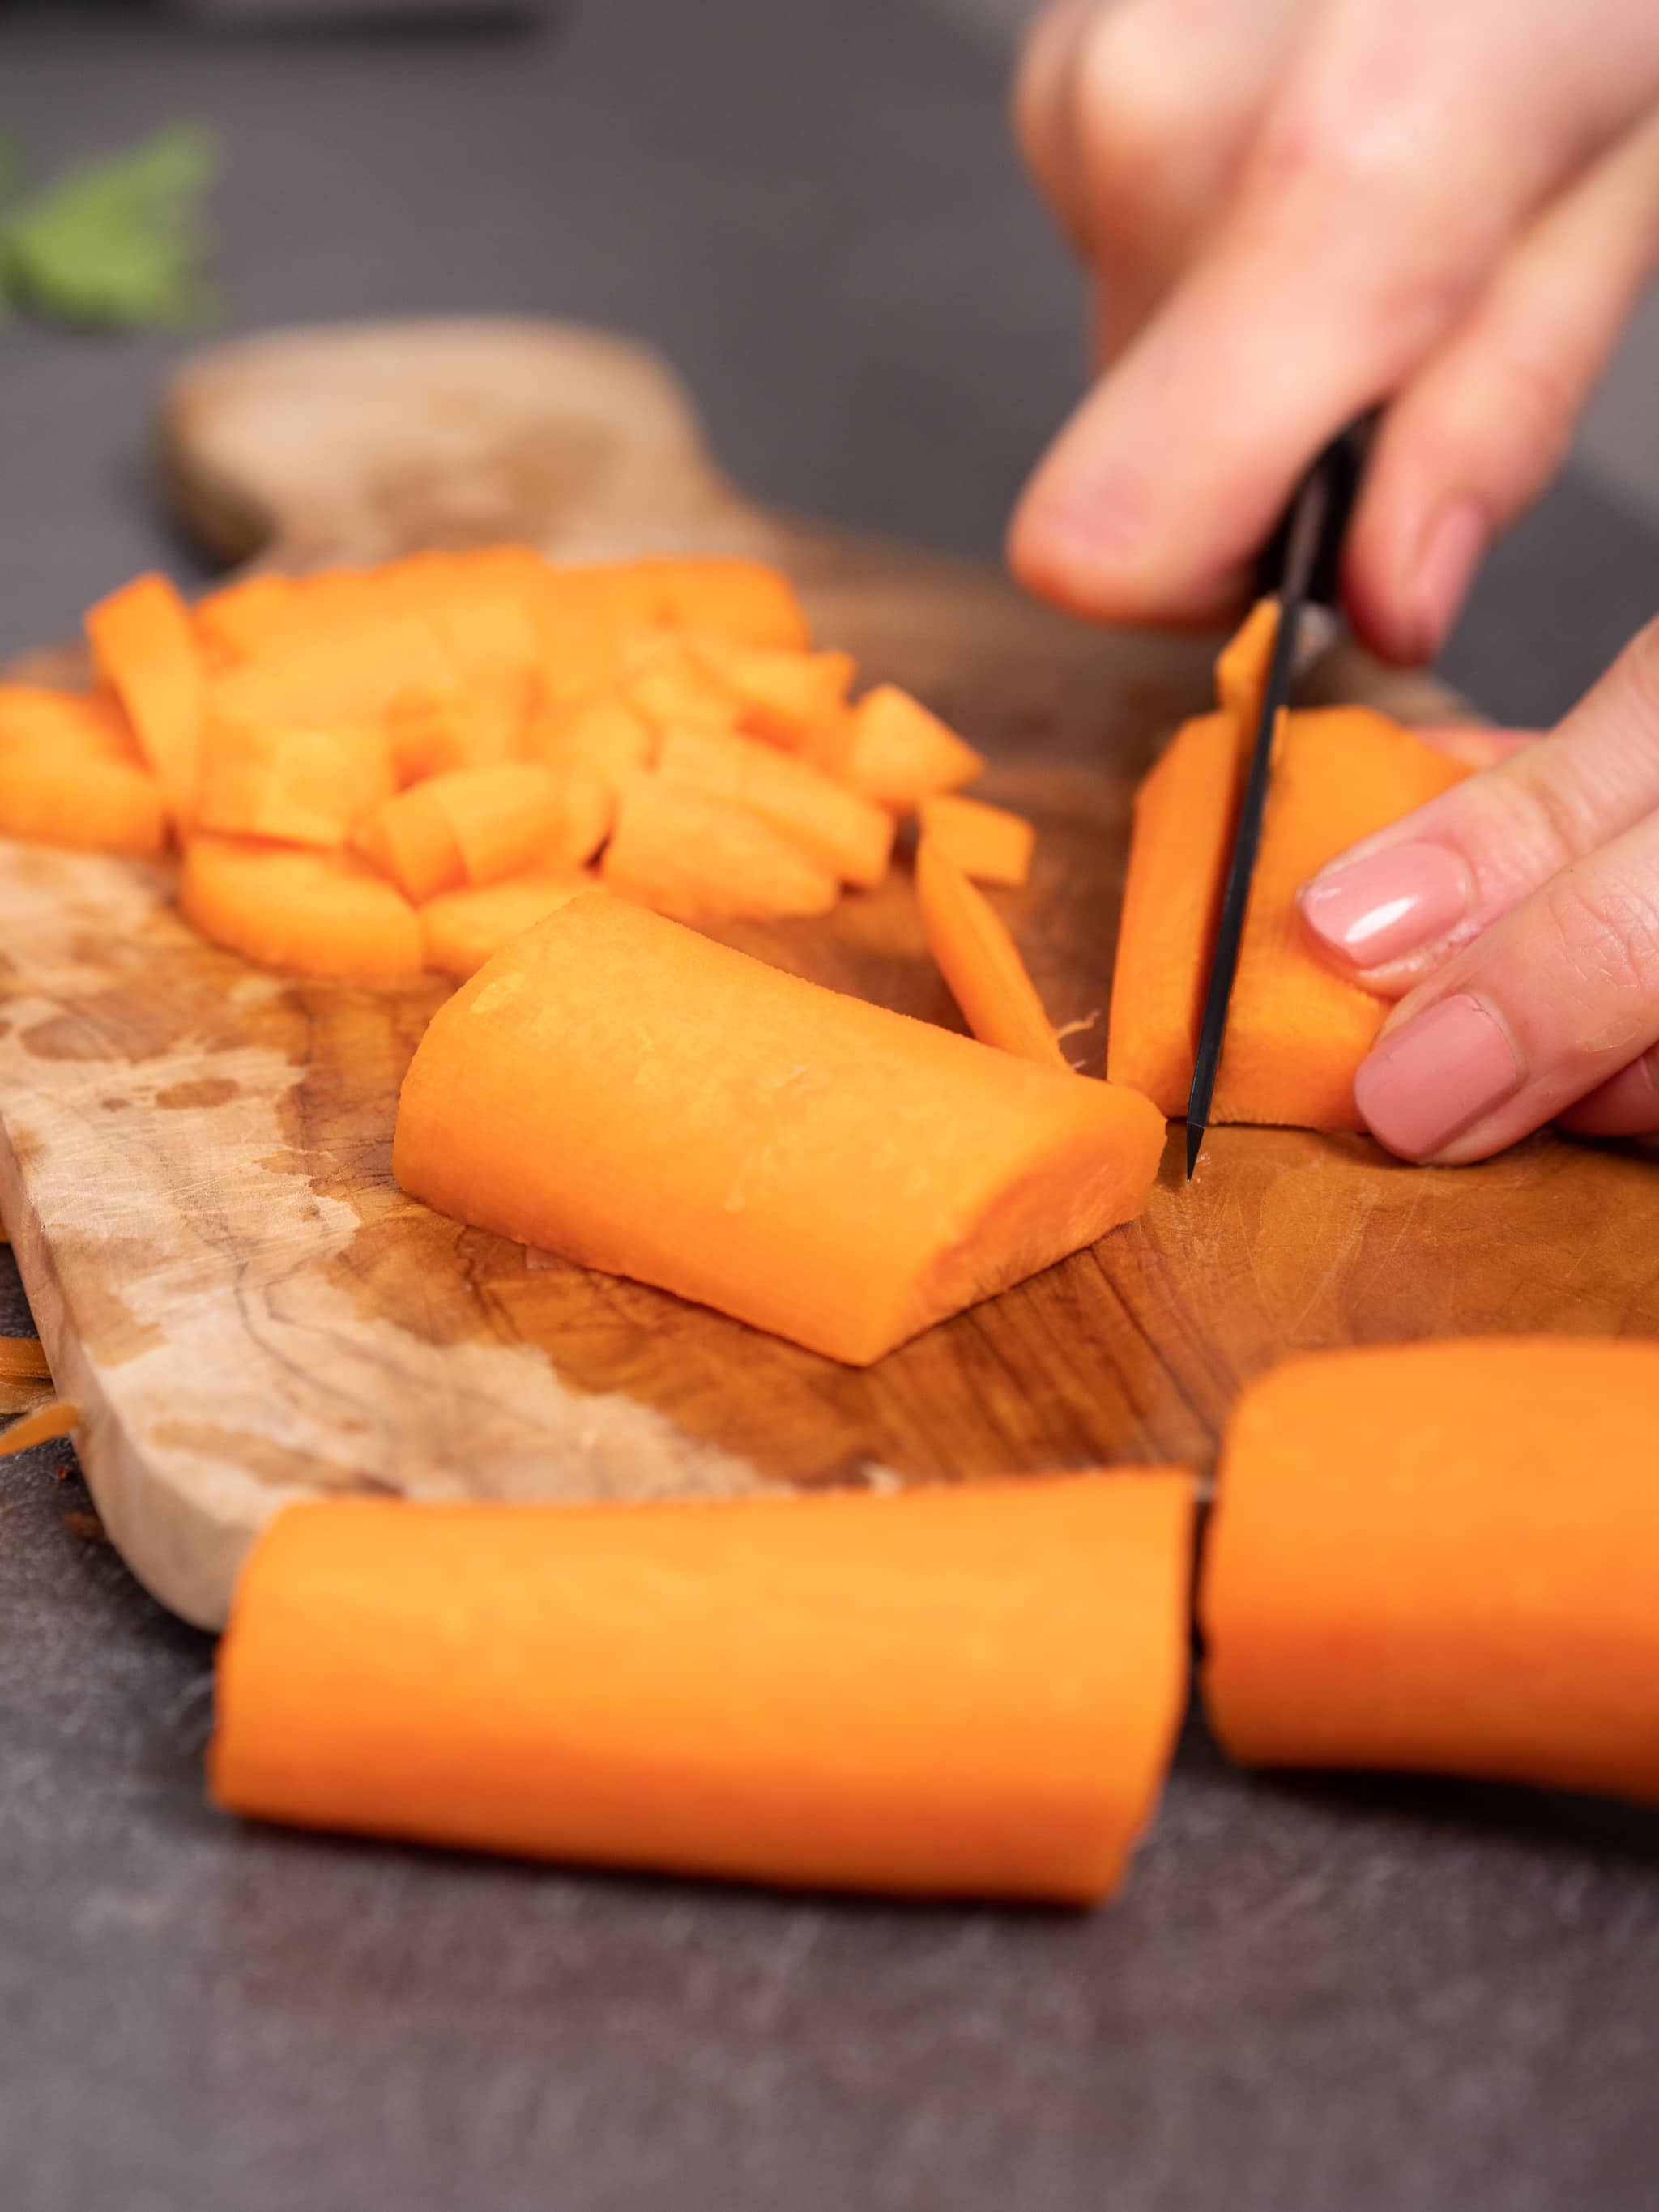 couper les carottes en petits morceaux